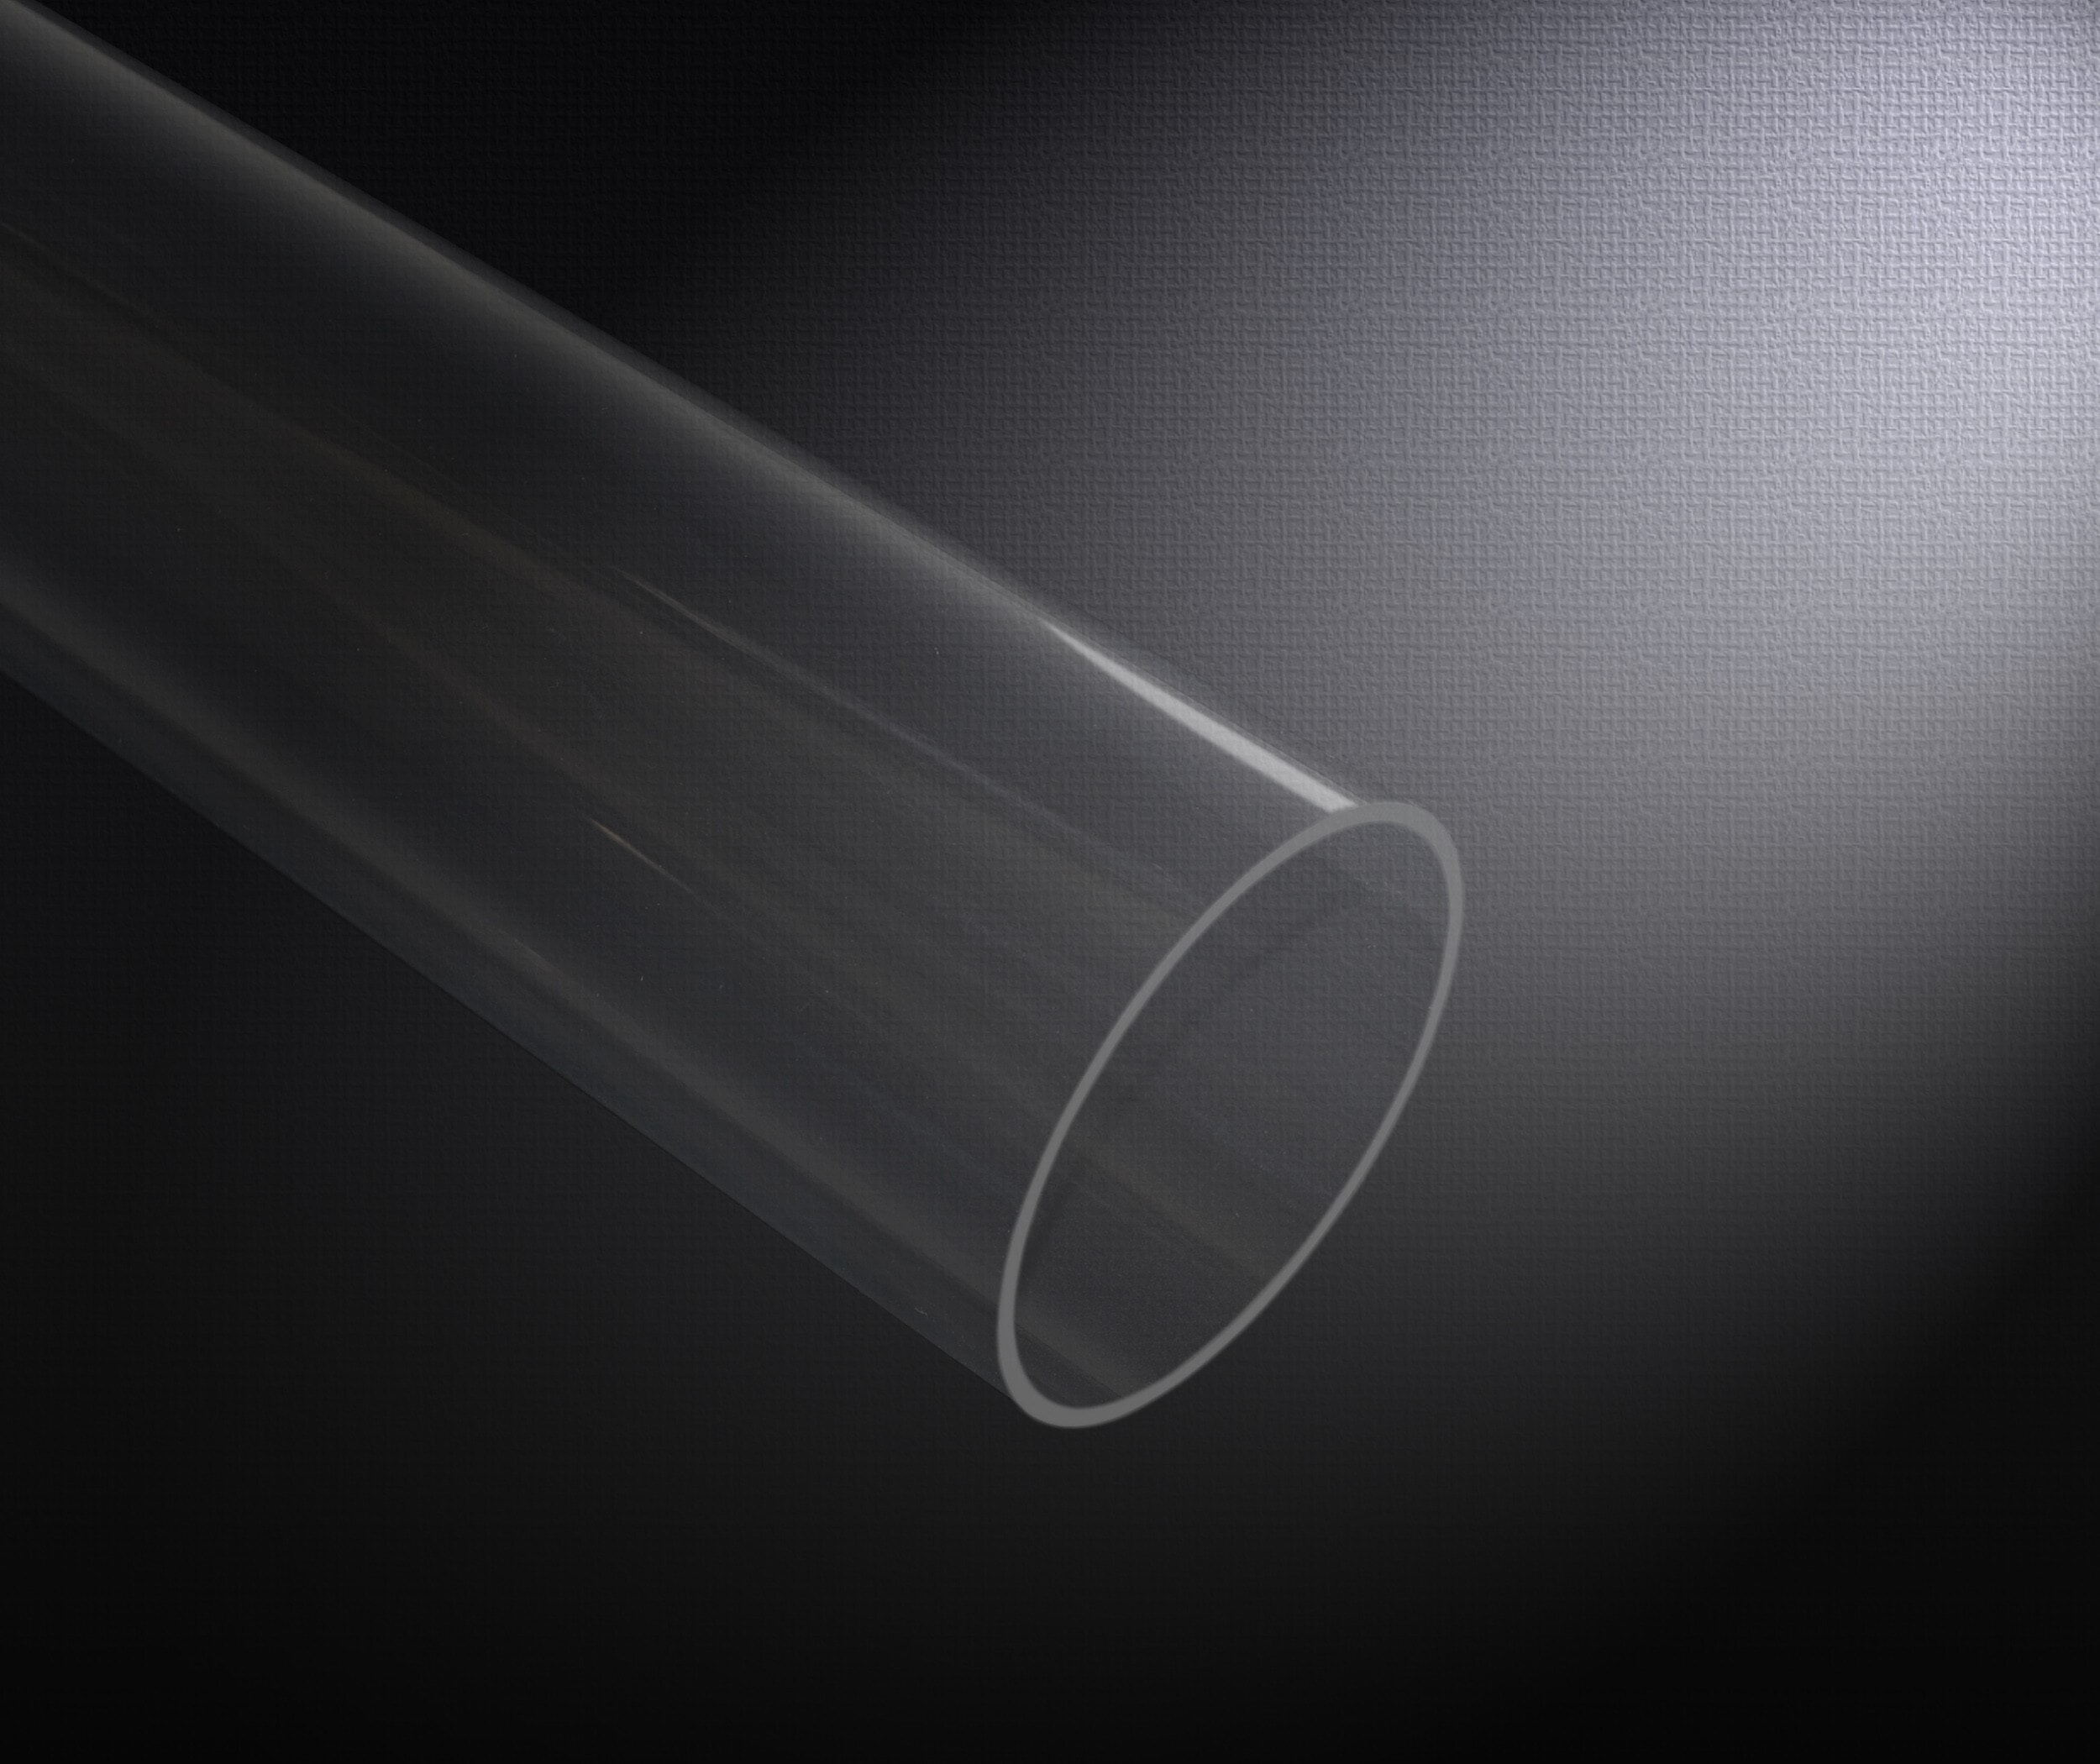 Acrylique Transparent Tube Rond 200mm/300mm/400mm Longueurs 5mm-50mm  Extérieur